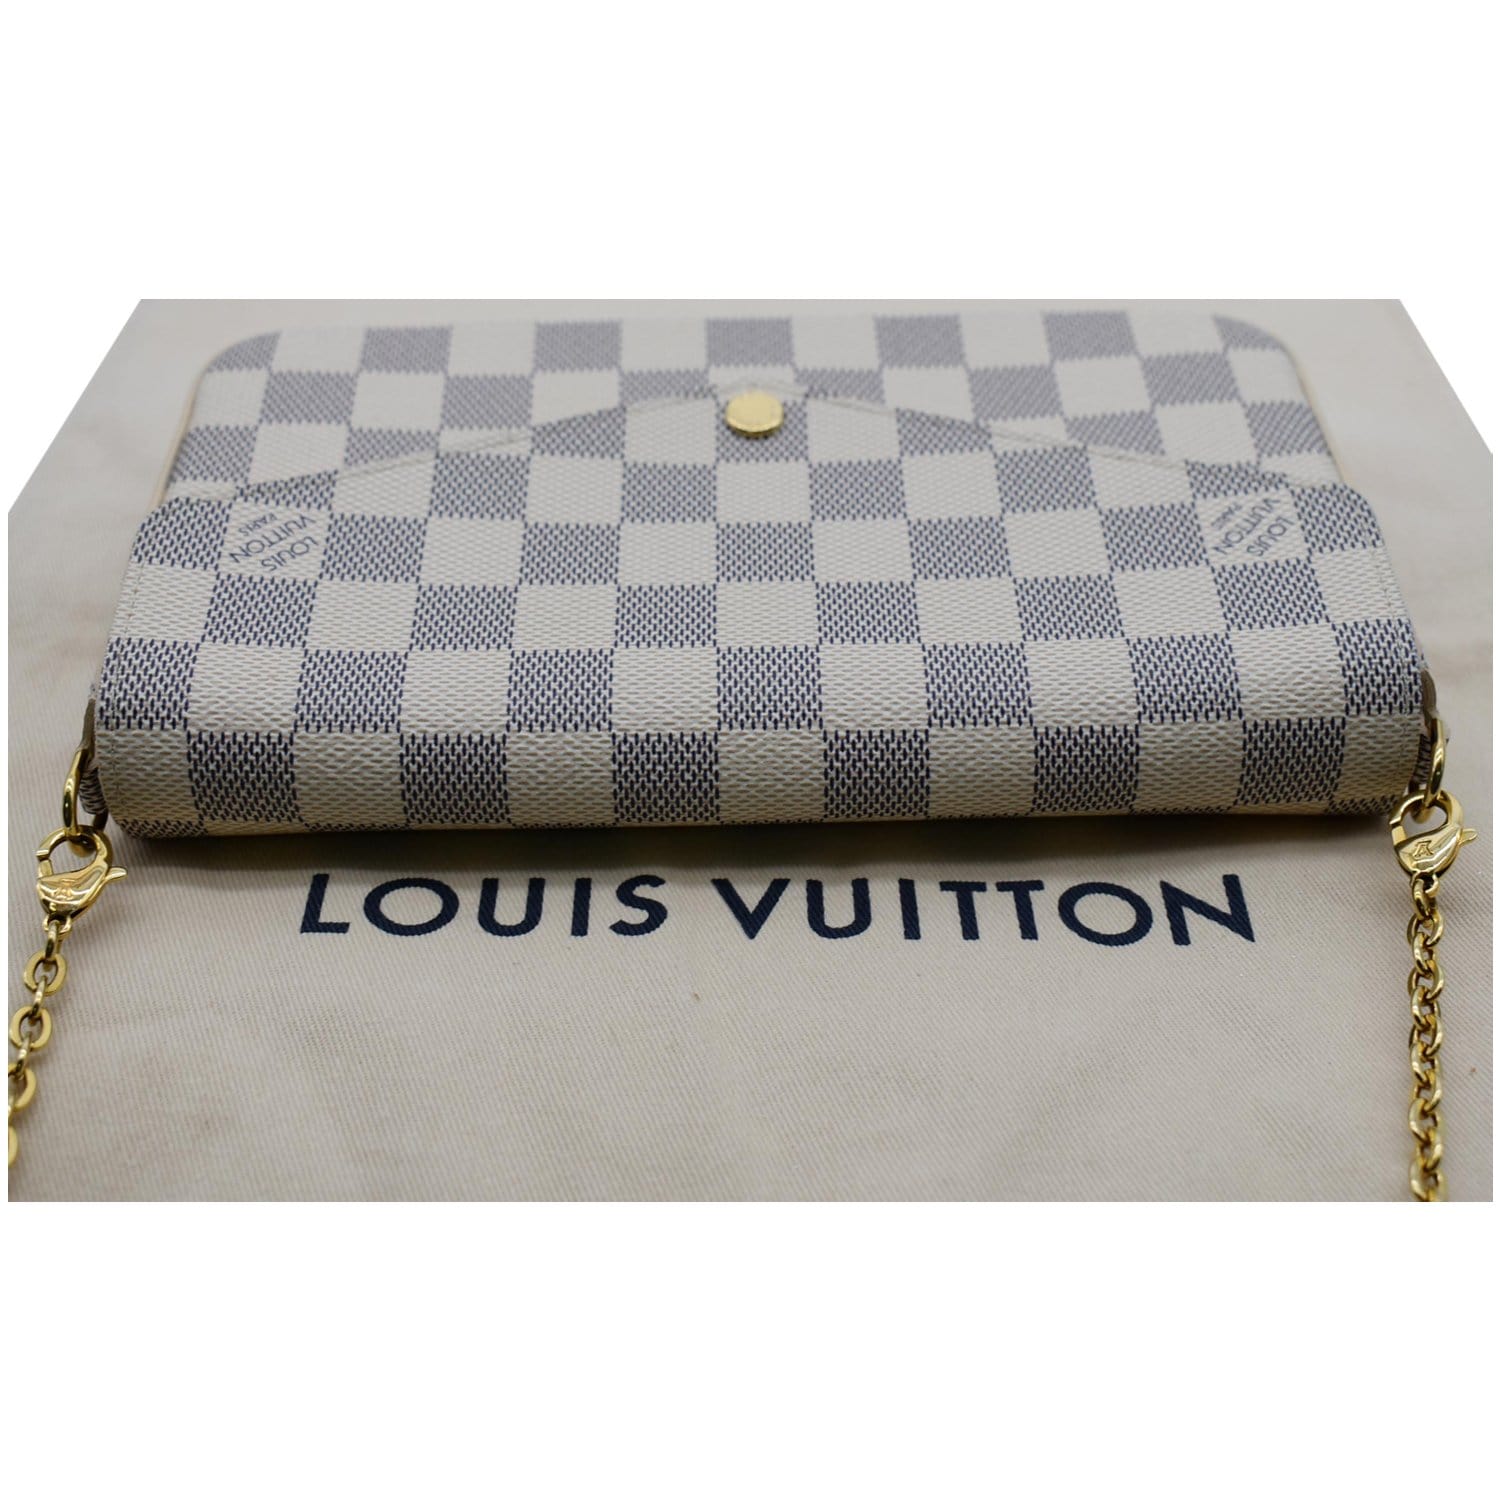 Luxeluxurylabels on Instagram: Louis Vuitton in today Damier ebene south  bank crossbody 1495.00❌sold❌ Felice pochette empreinte 1350.00